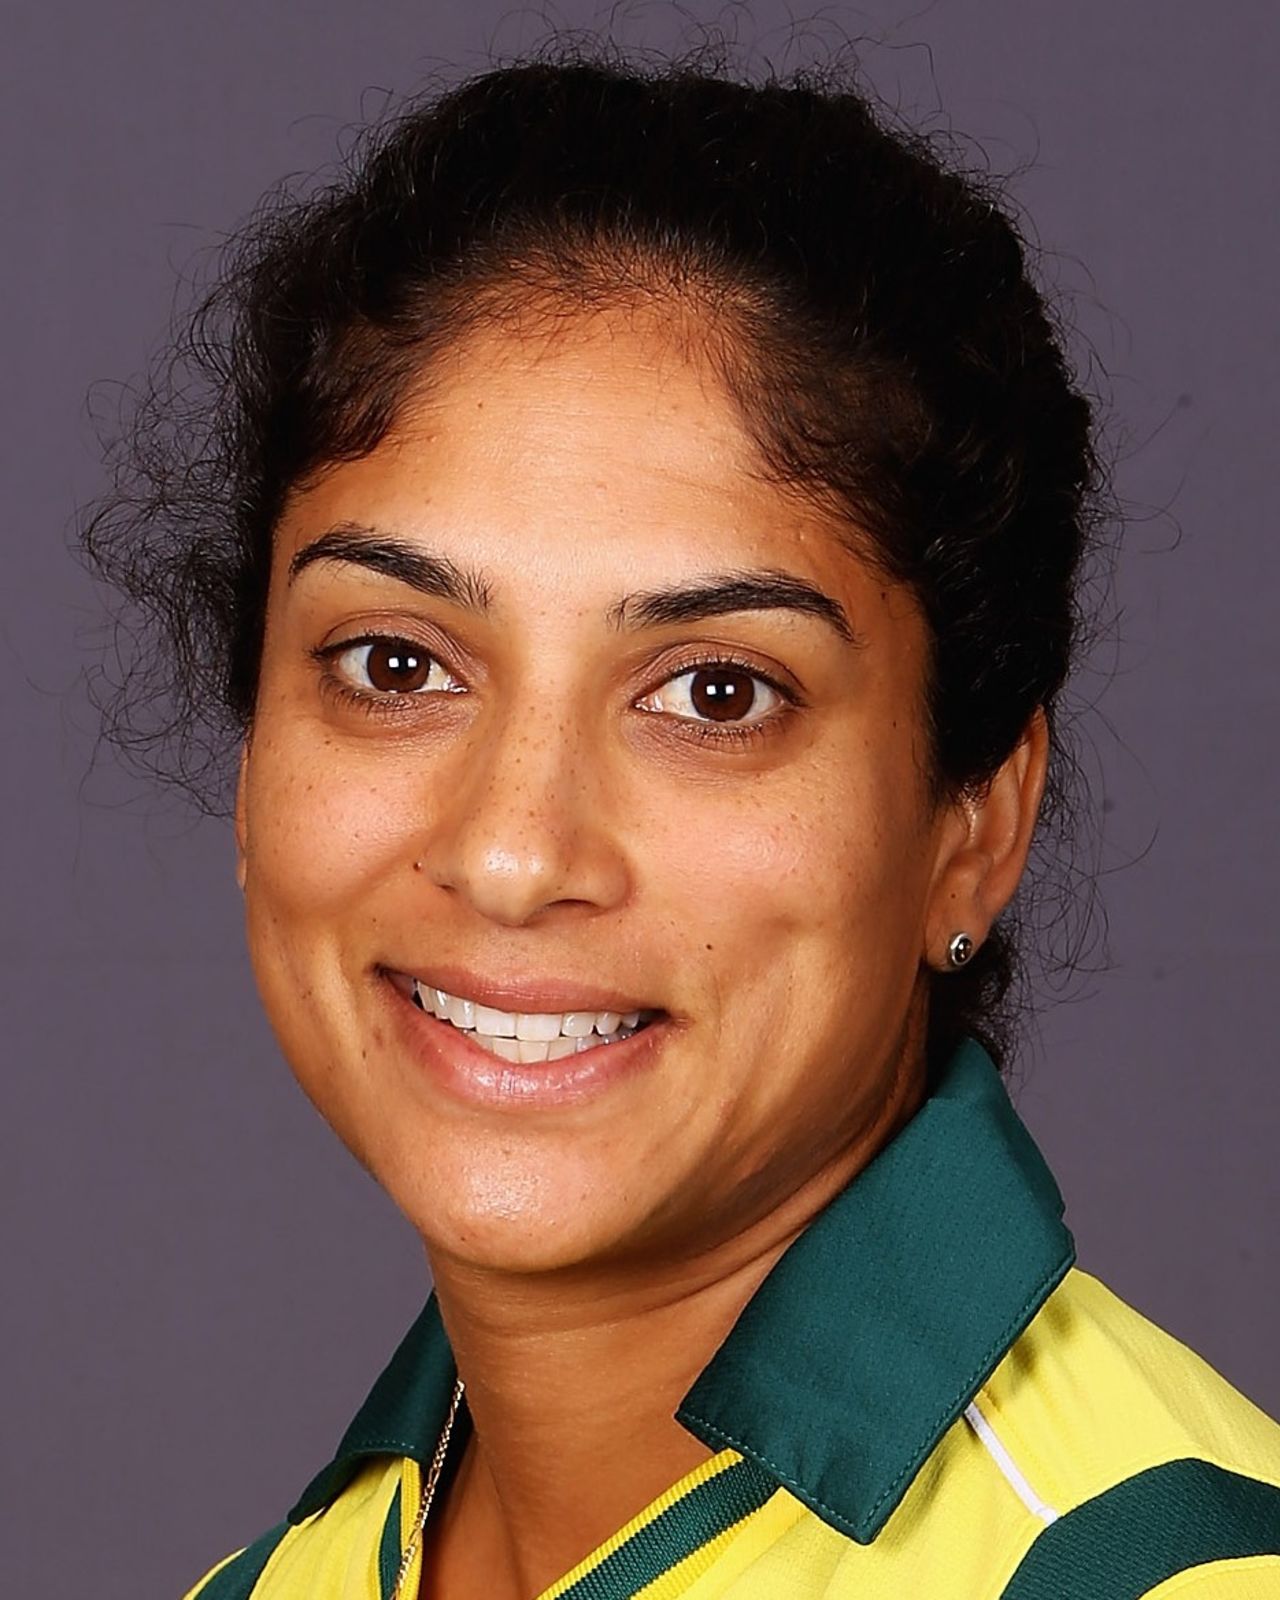 Lisa Sthalekar portrait, Colombo, September 22, 2012